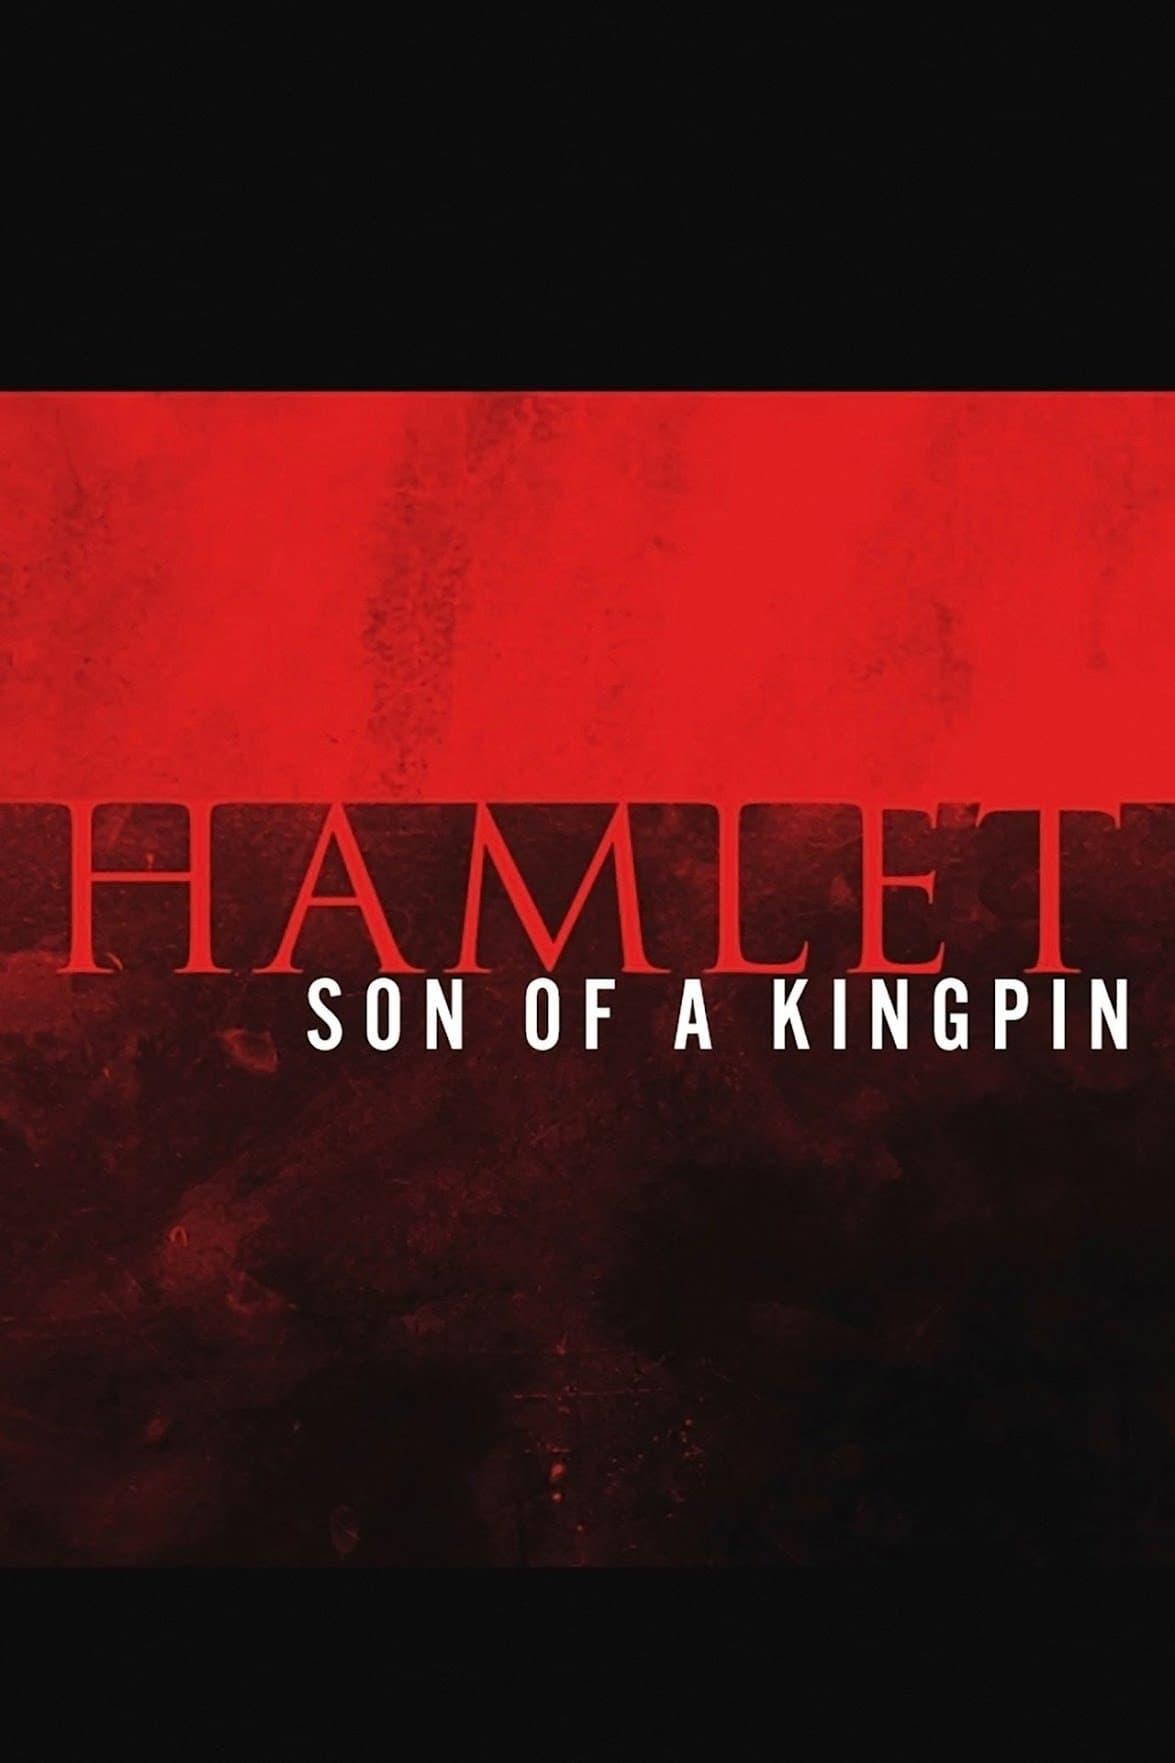 Hamlet: Son of a Kingpin poster